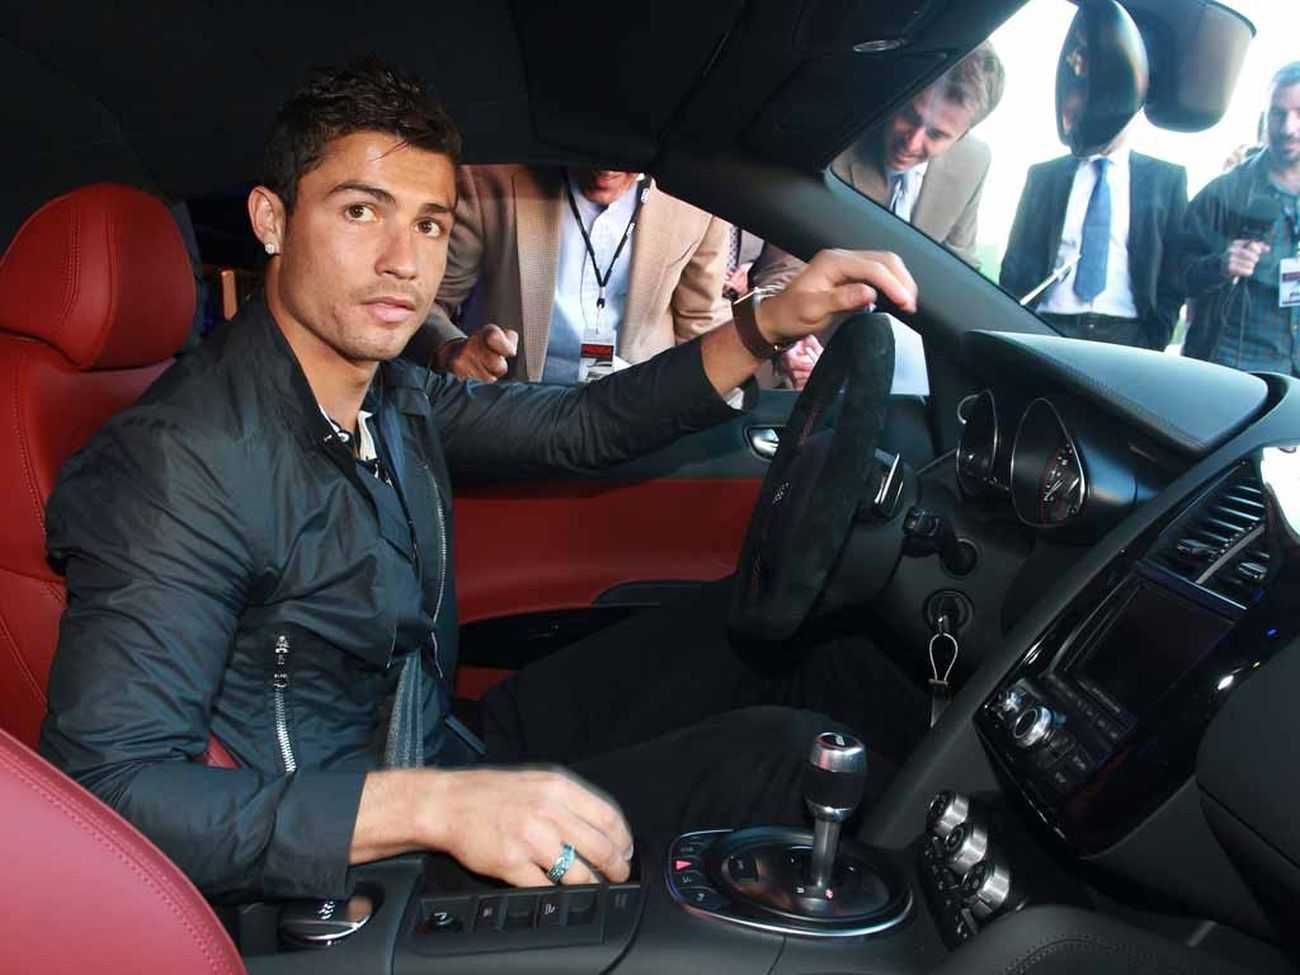 Роналду похизувався розкішним авто за 2 мільйони євро